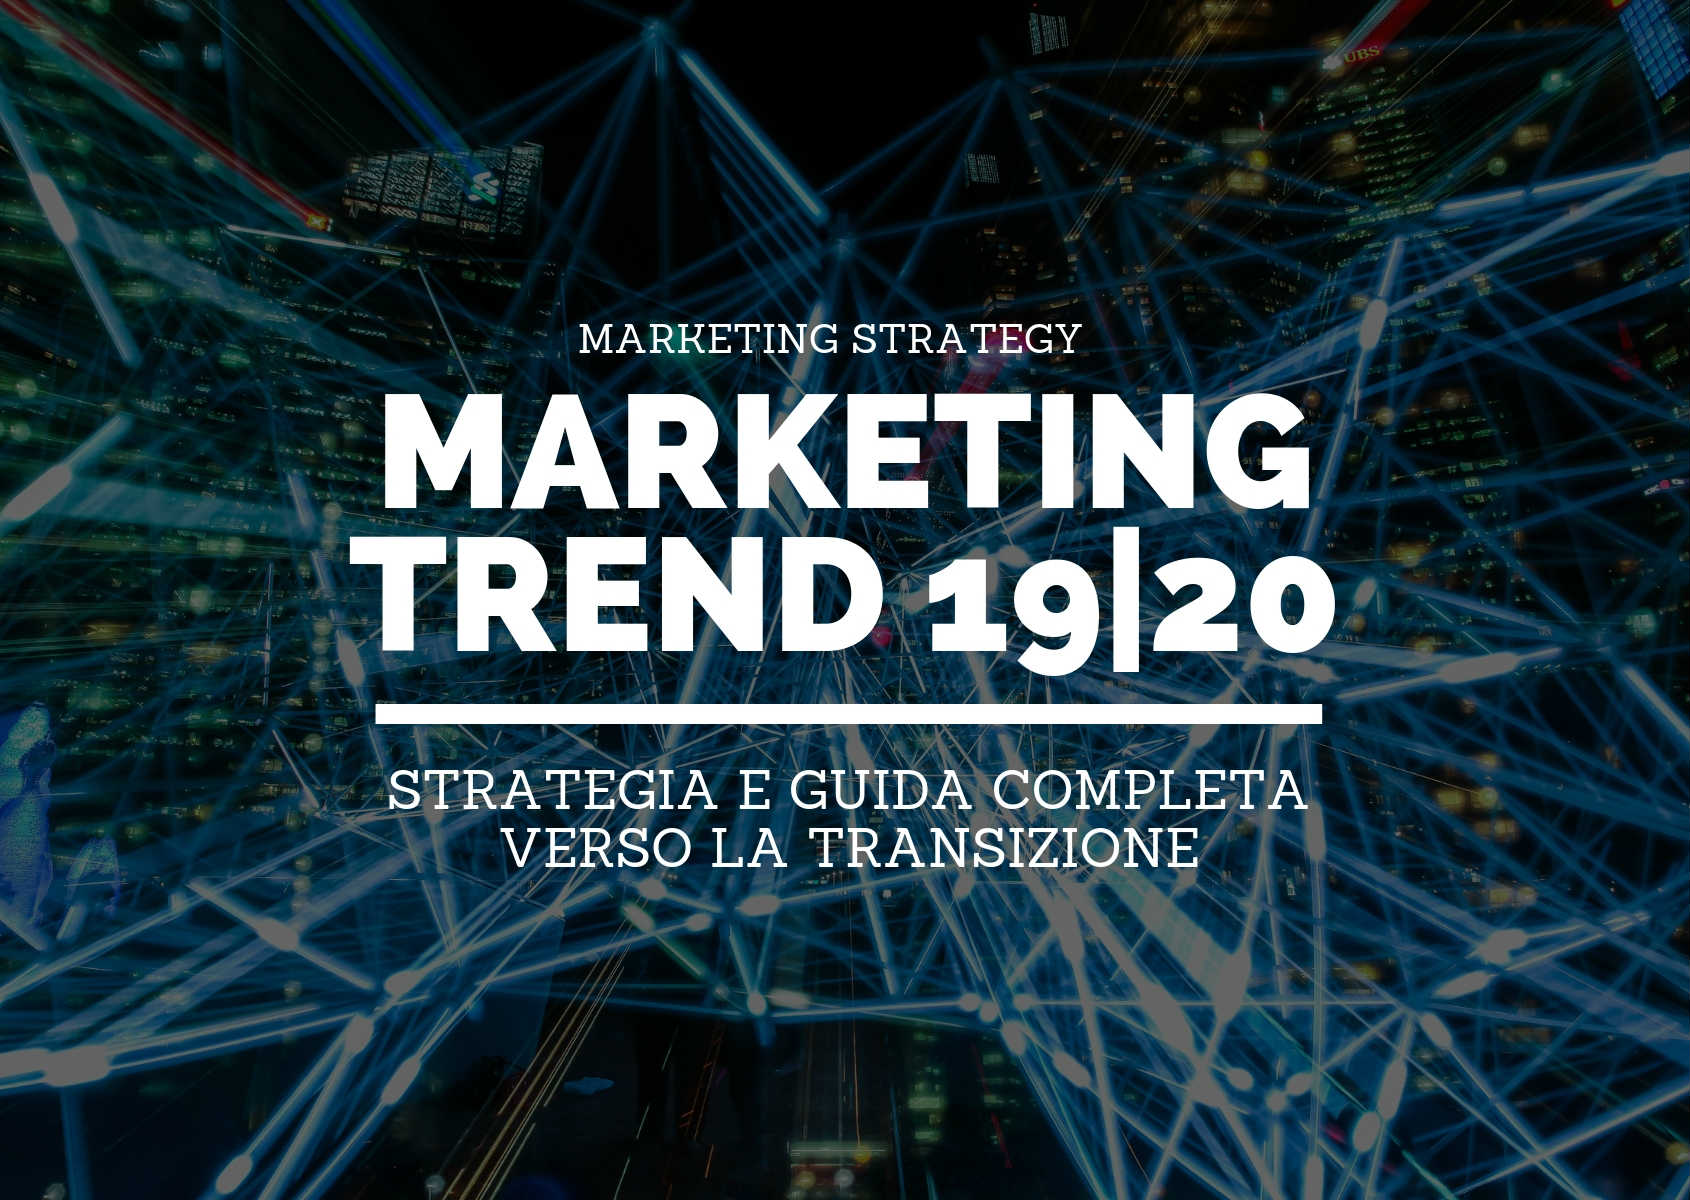 Marketing trend 2019/2020: strategia e guida completa verso la transizione